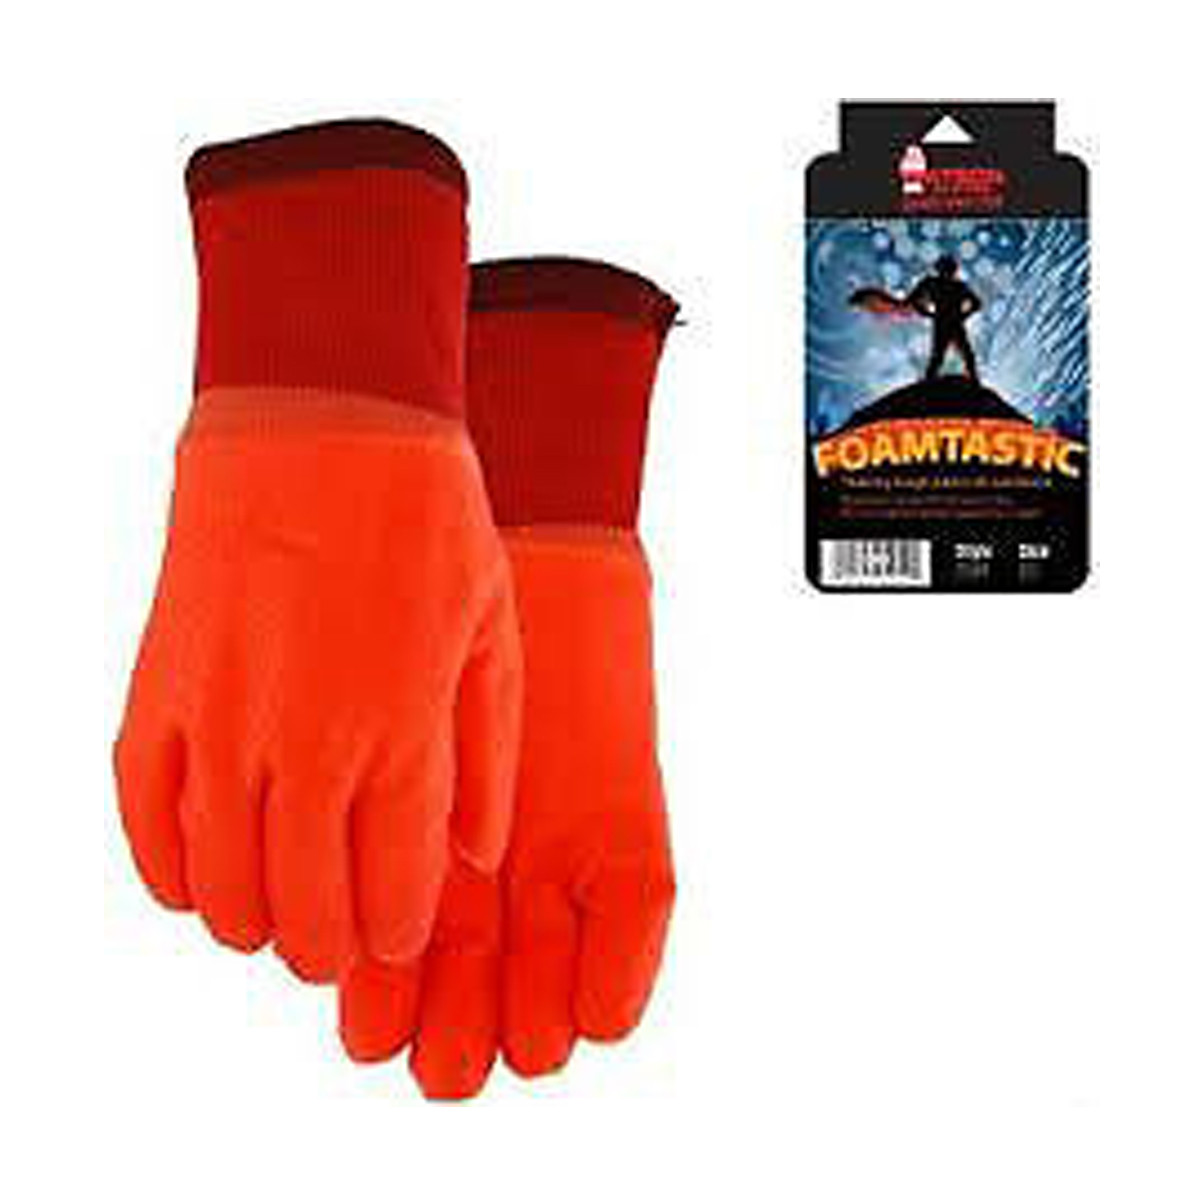 Foamtastic Rubber Monkey Grip Gloves